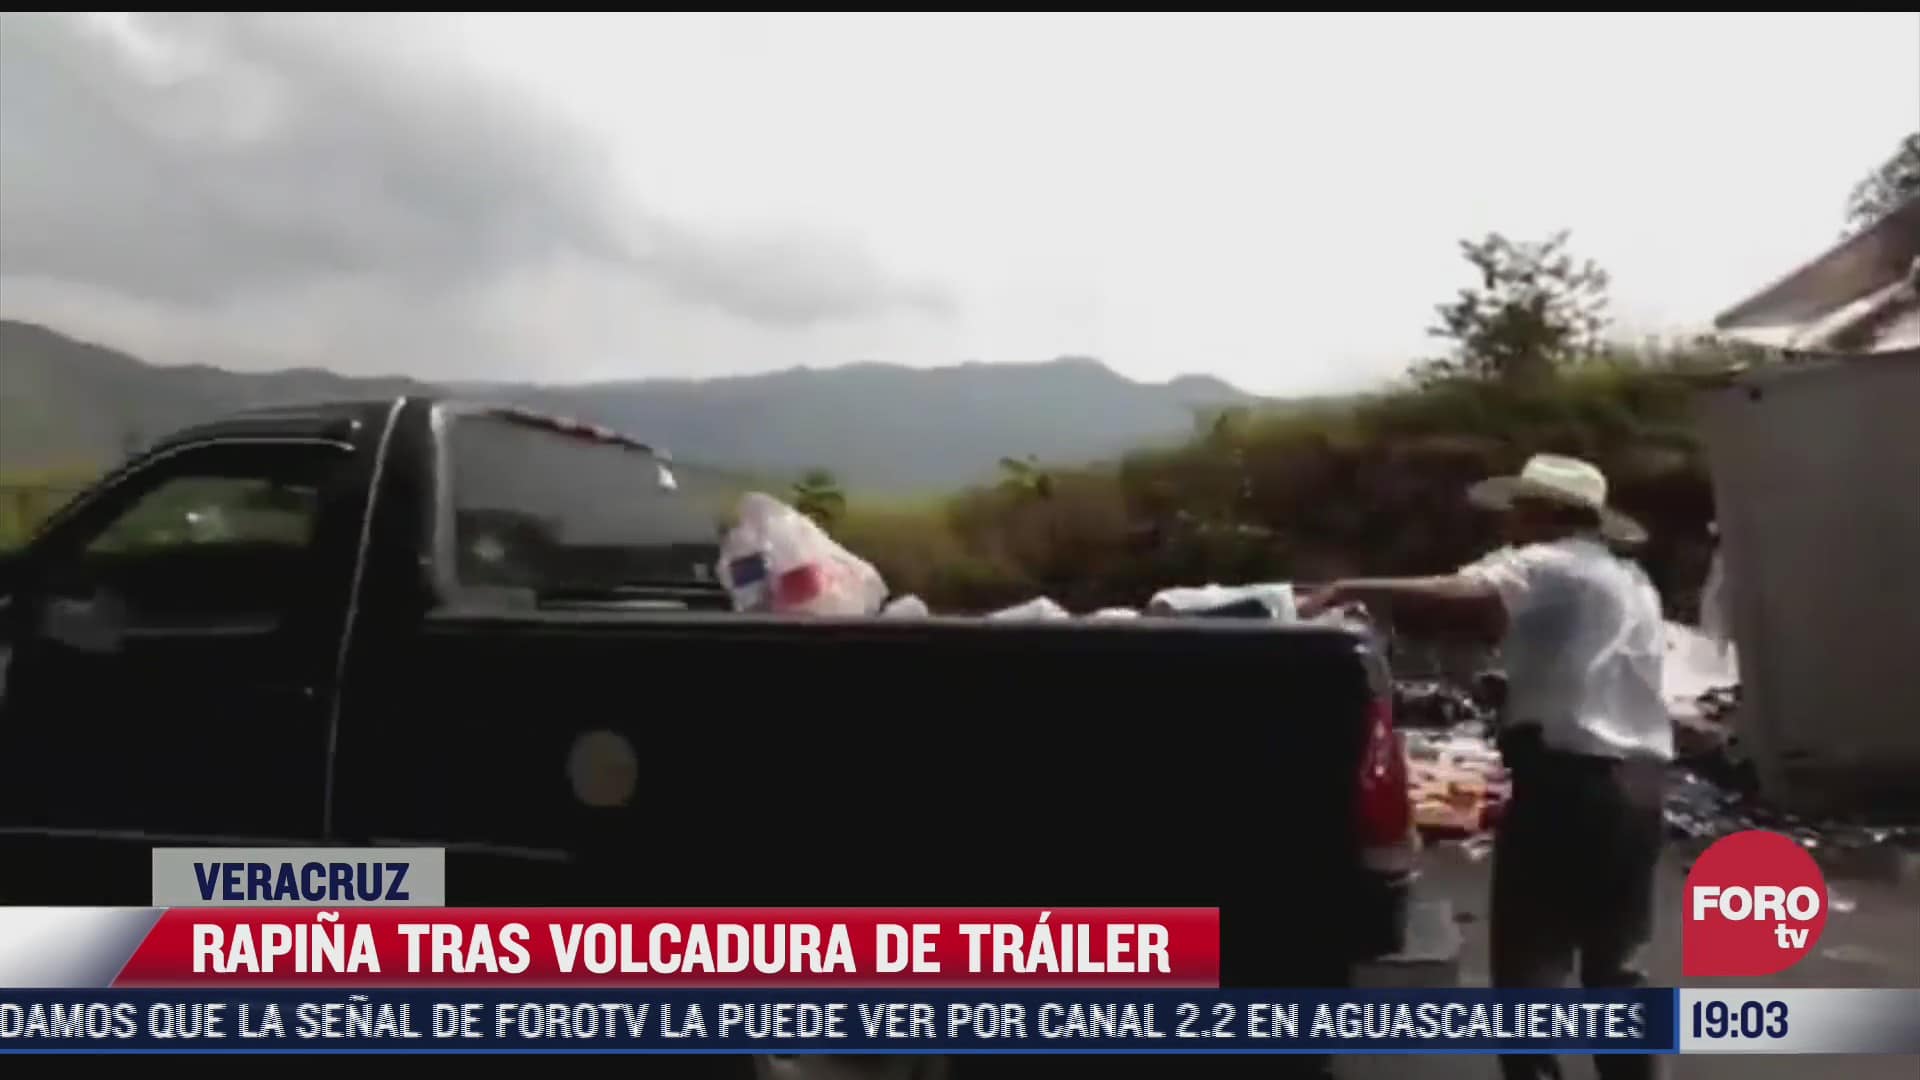 habitantes de veracruz cometen rapina tras volcadura de trailer